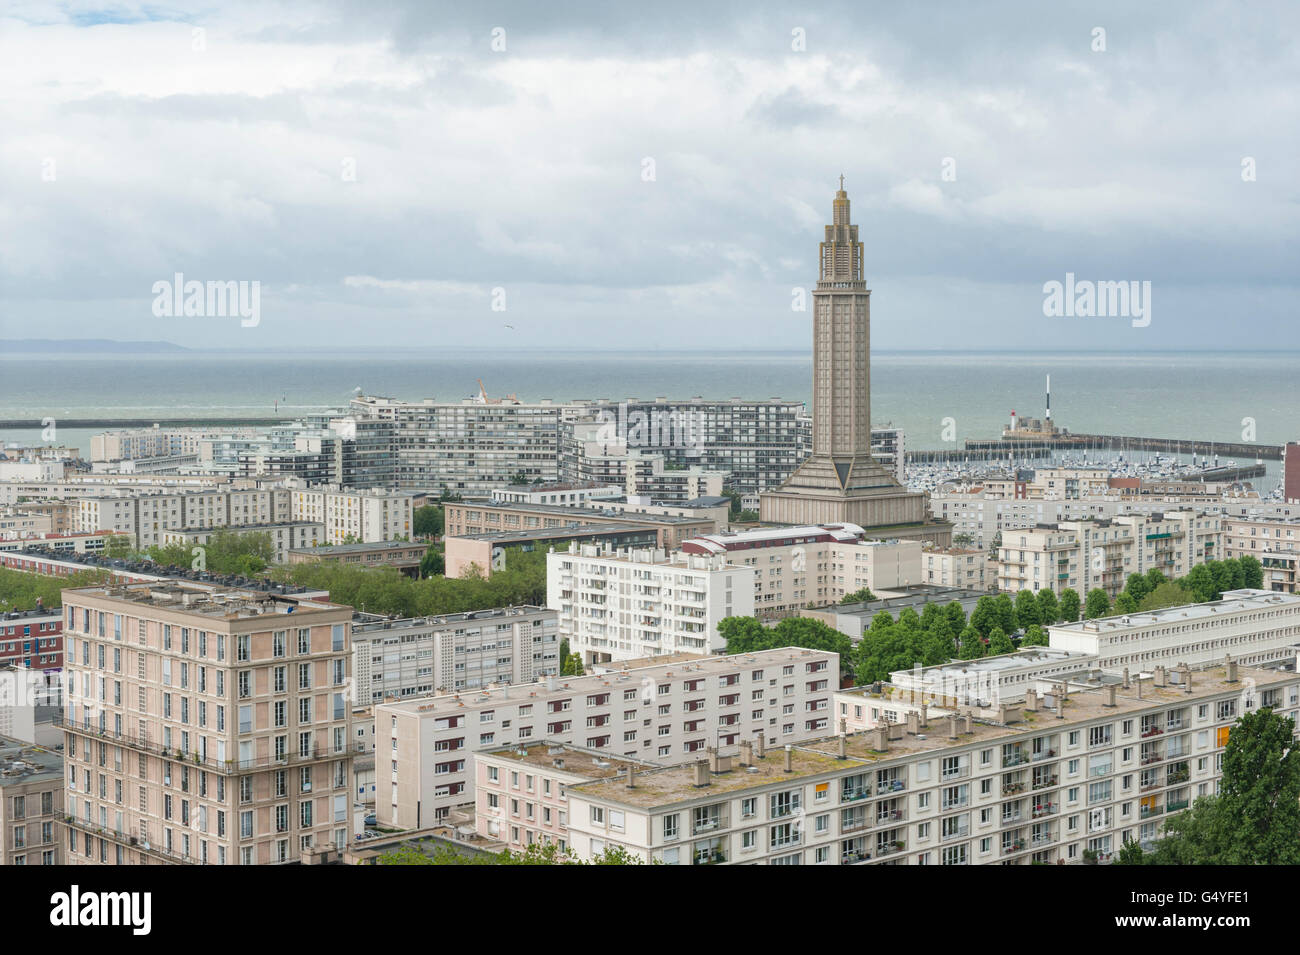 La zona de patrimonio mundial de Le Havre, construido por Auguste Perret con St Joseph's church como hito, Normandía, Francia Foto de stock